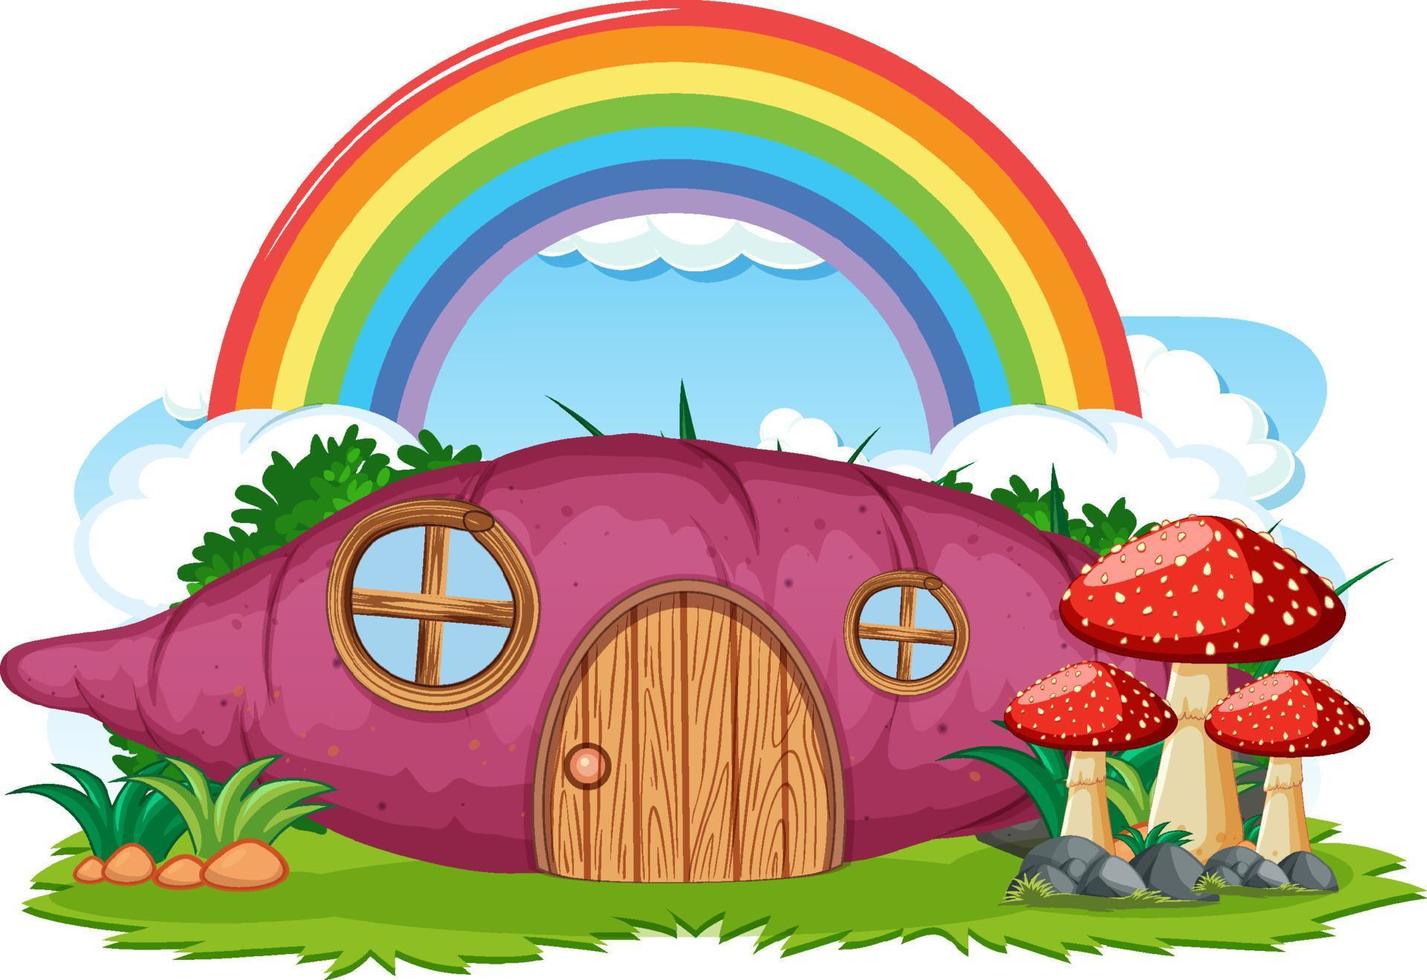 Fantasy-Kartoffelhaus mit Regenbogen am Himmel vektor